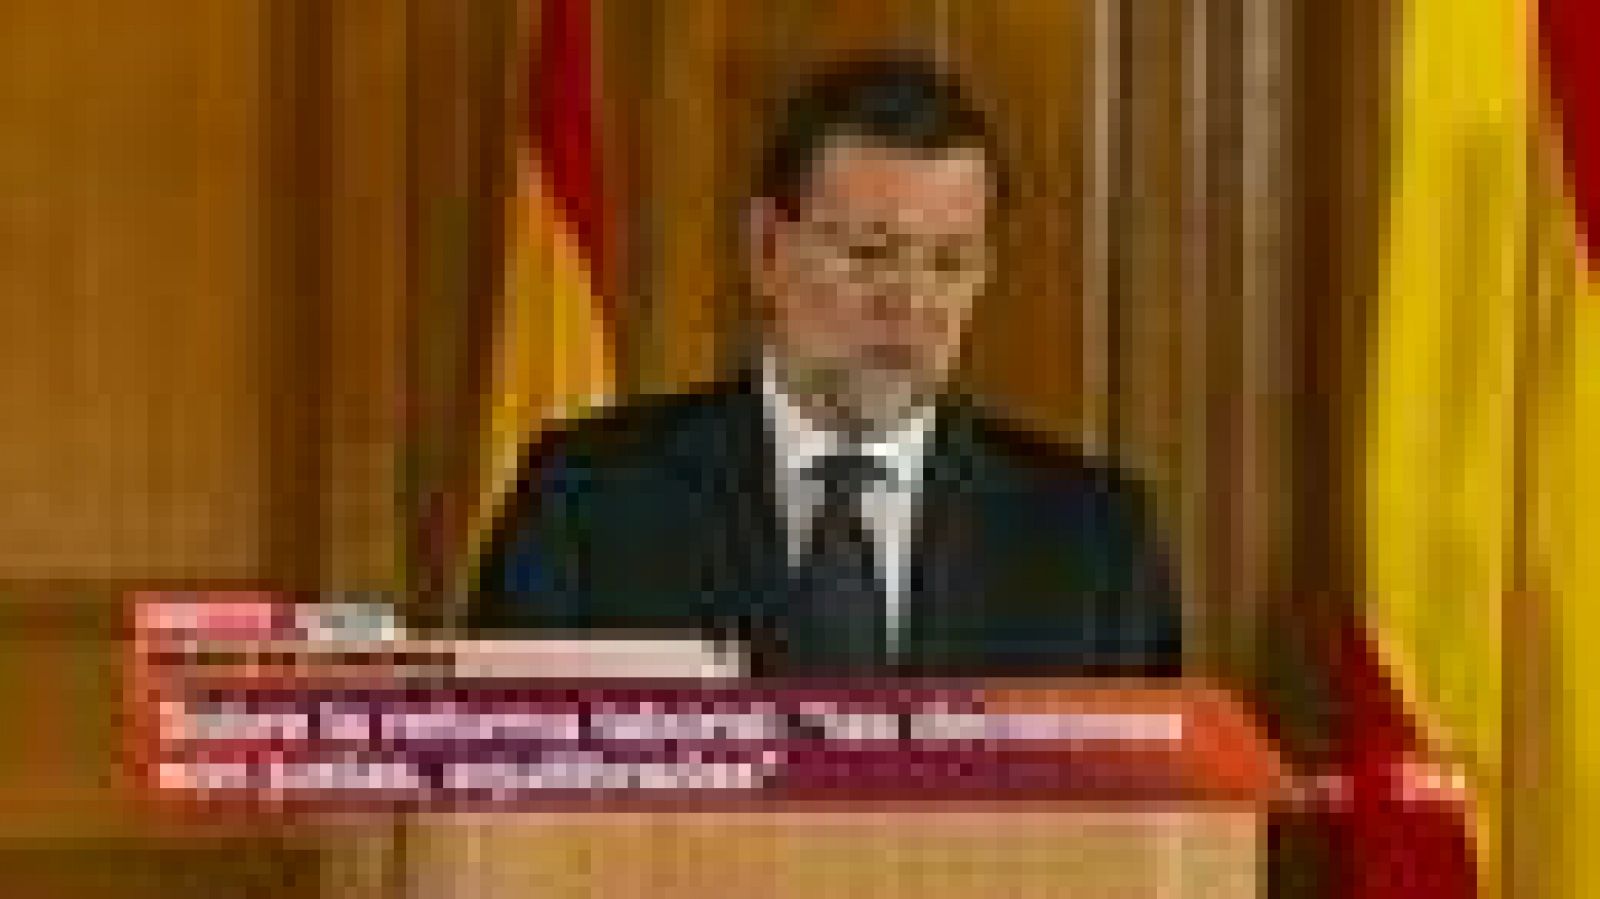 El presidente del Gobierno, Mariano Rajoy, ha hablado sobre los disturbios de Valencia de la jornada del lunes entre estudiantes y policías. Rajoy ha pedido a todas las partes que utilicen el "sentido común" y la "mesura" para que este caso "no vuelva a ocurrir".